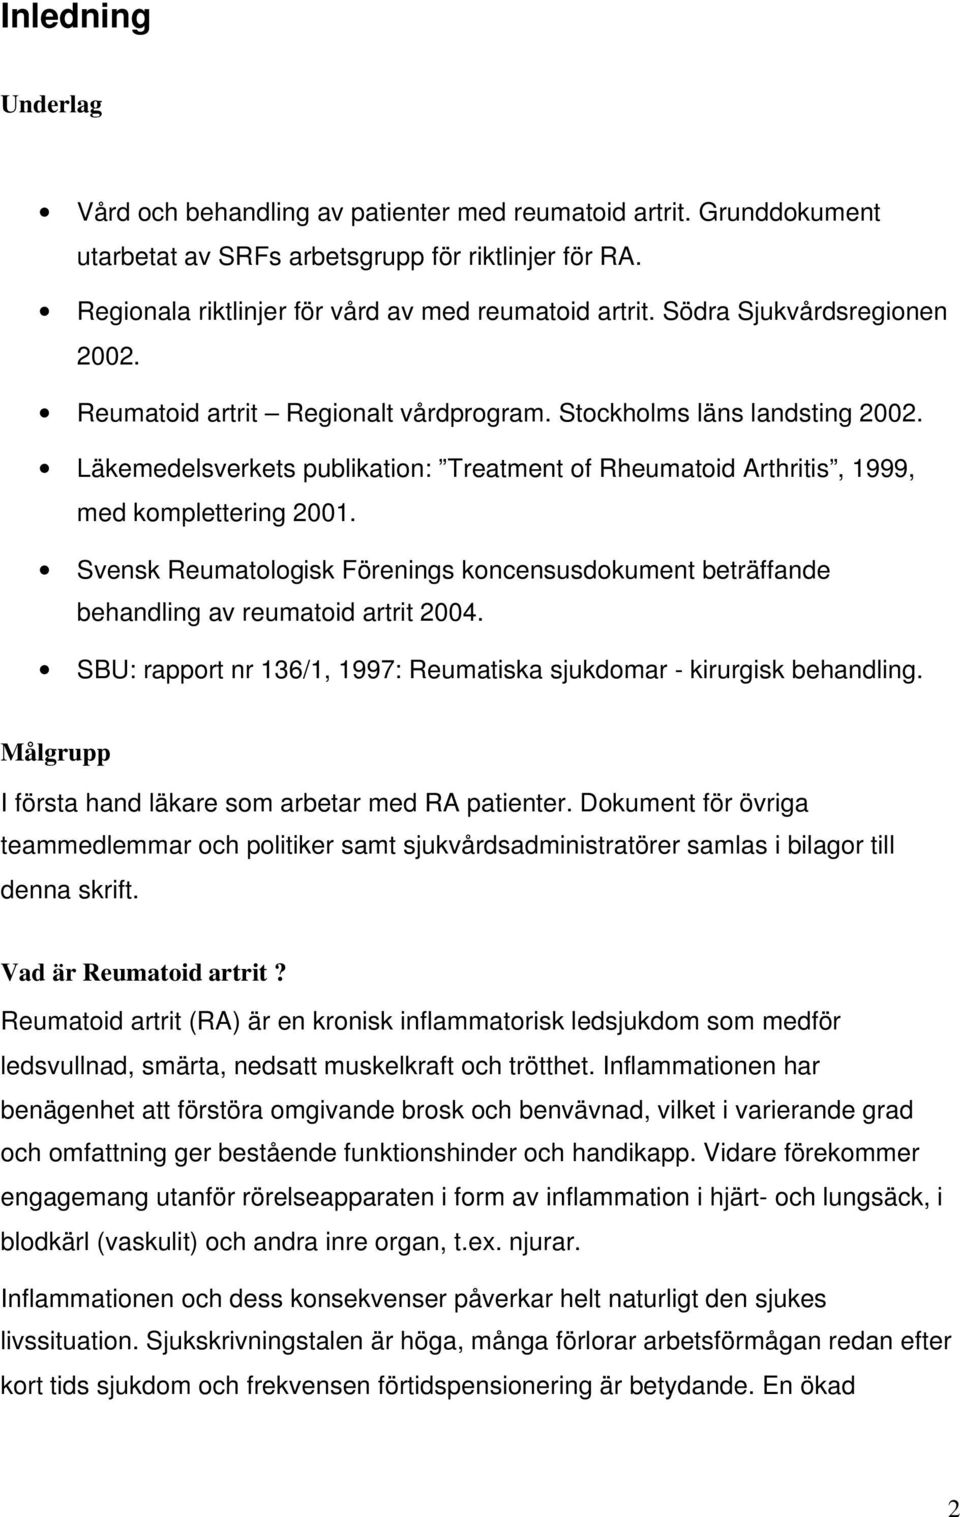 Svensk Reumatologisk Förenings koncensusdokument beträffande behandling av reumatoid artrit 2004. SBU: rapport nr 136/1, 1997: Reumatiska sjukdomar - kirurgisk behandling.